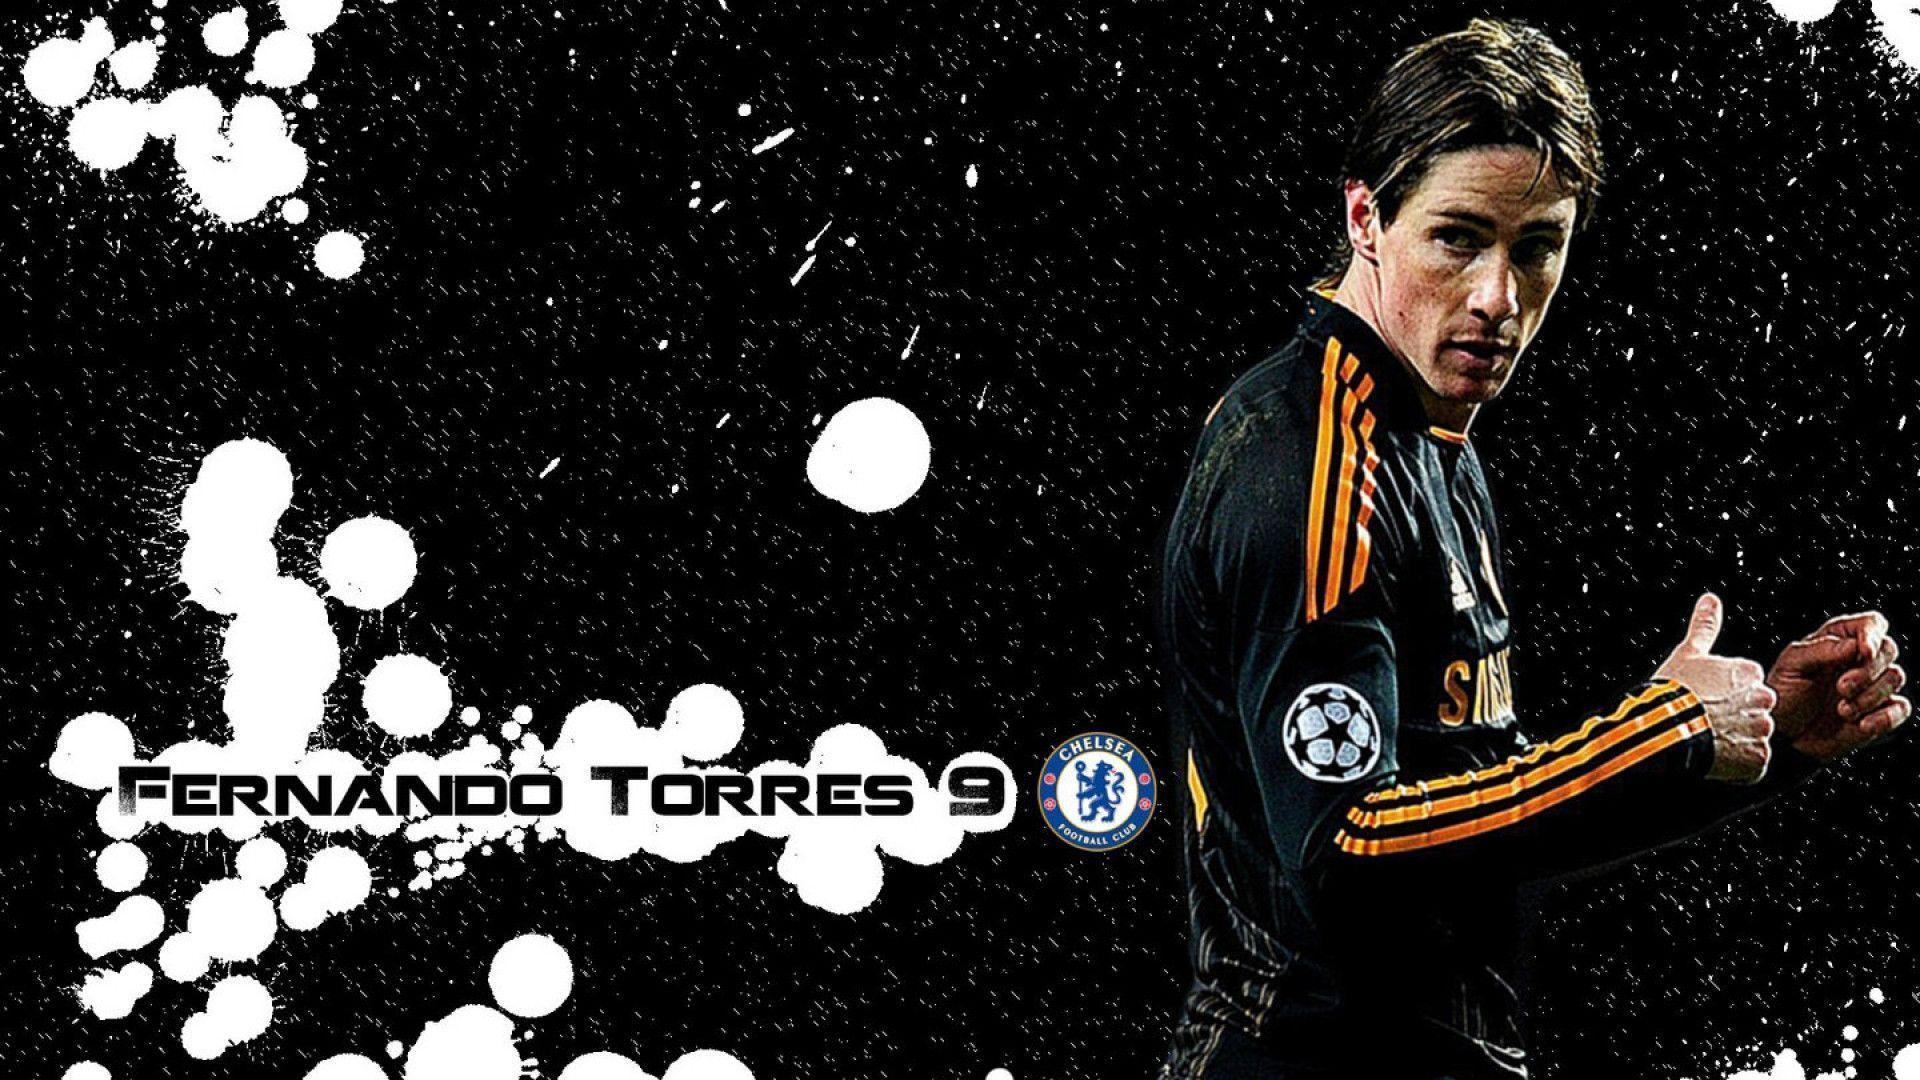 El Nino Fernando Torres Exclusive HD Wallpaper #